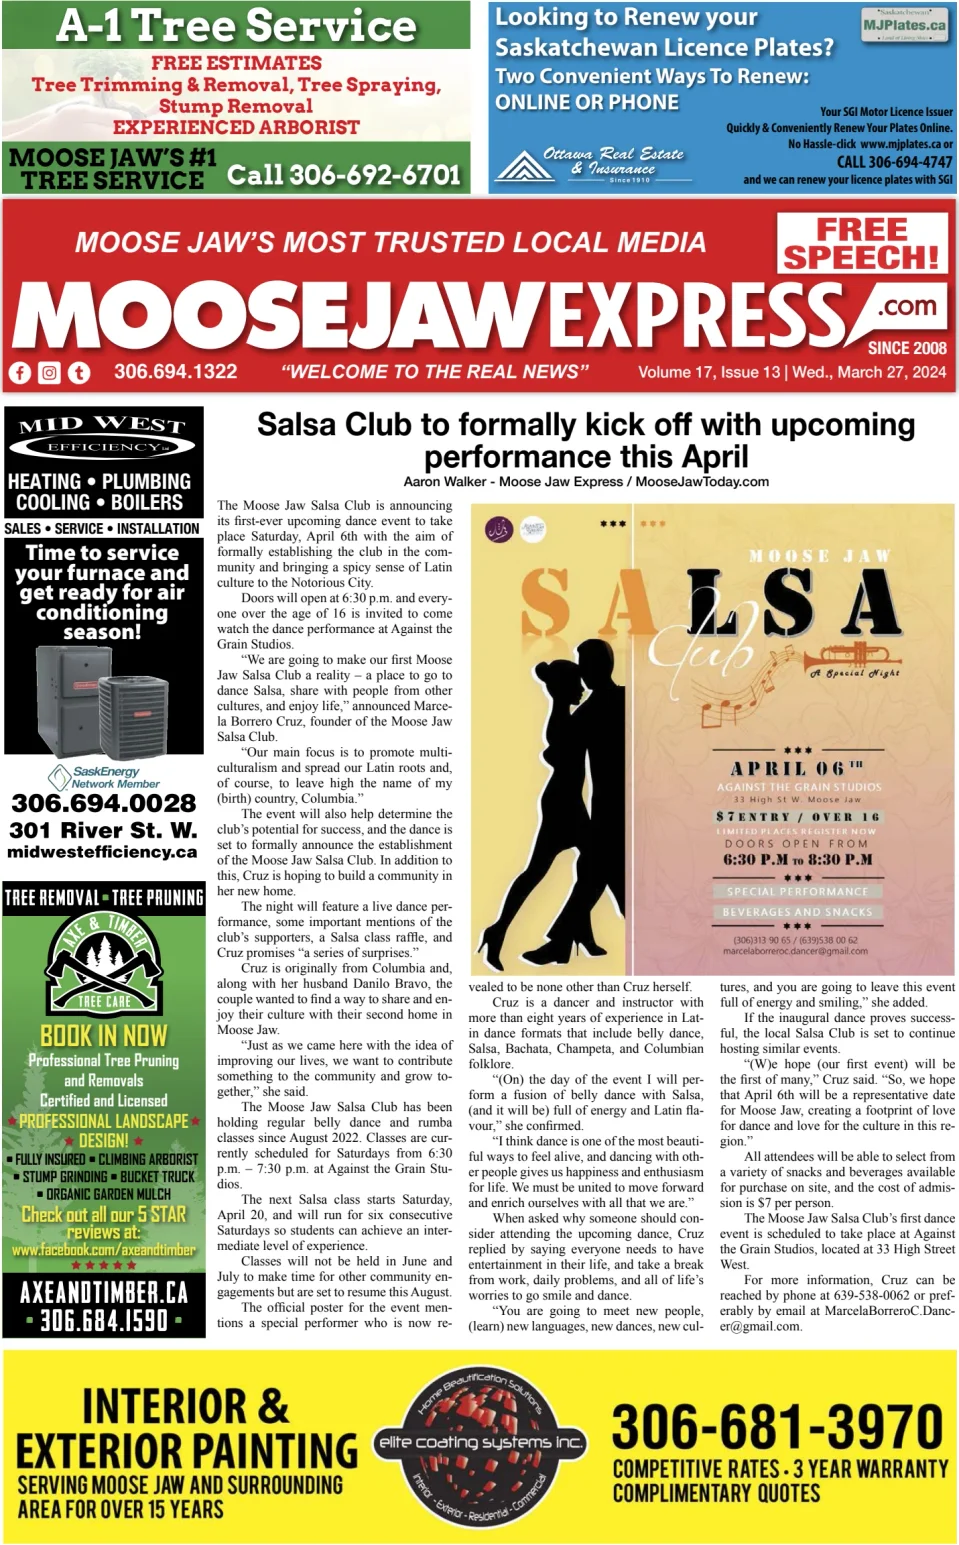 Moose Jaw Express.com